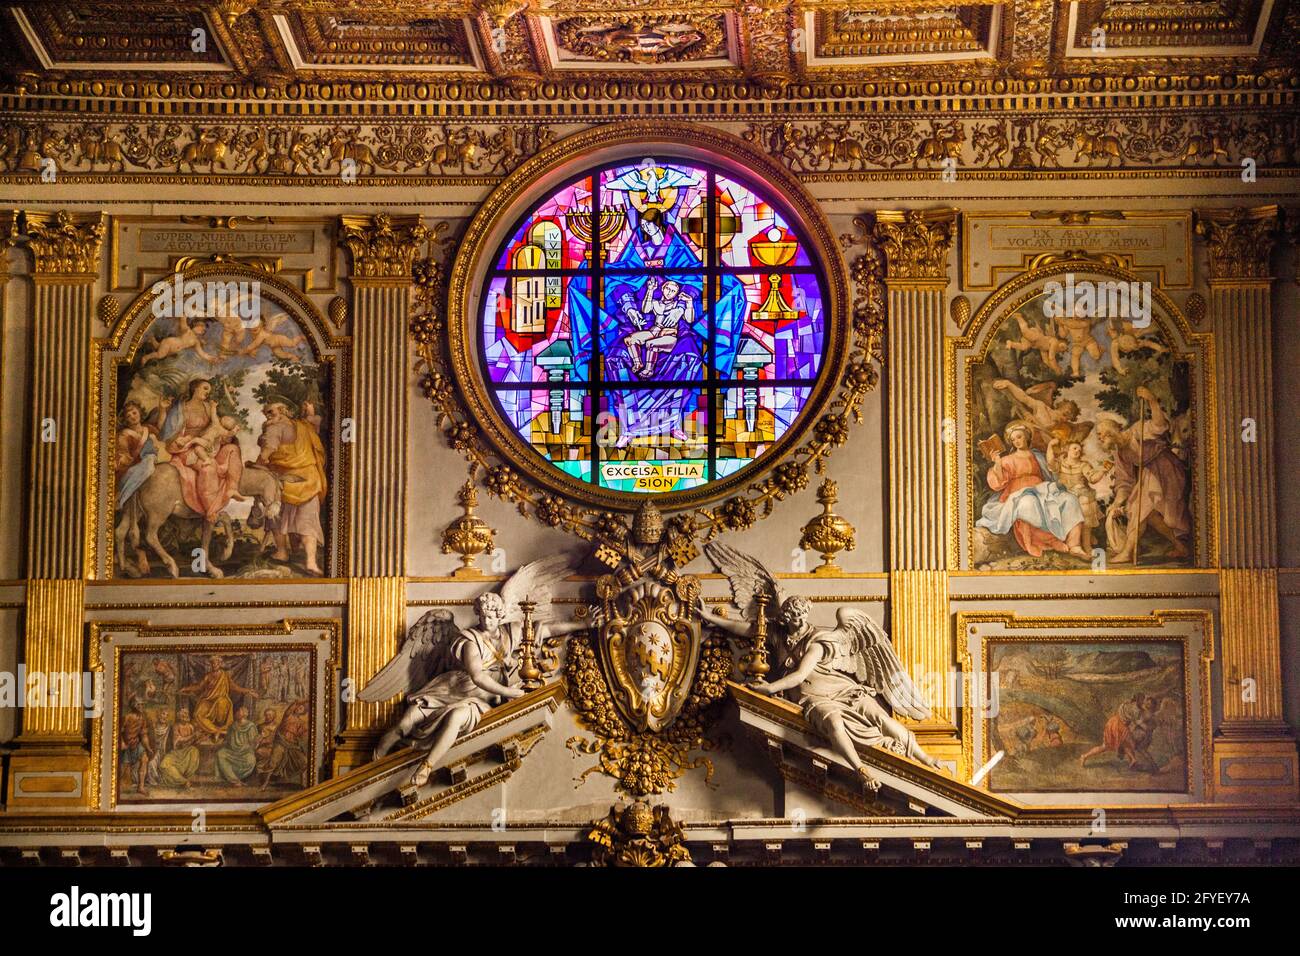 Stained glass interior of the Basilica di Santa Maria Maggiore in Rome, Italy Stock Photo